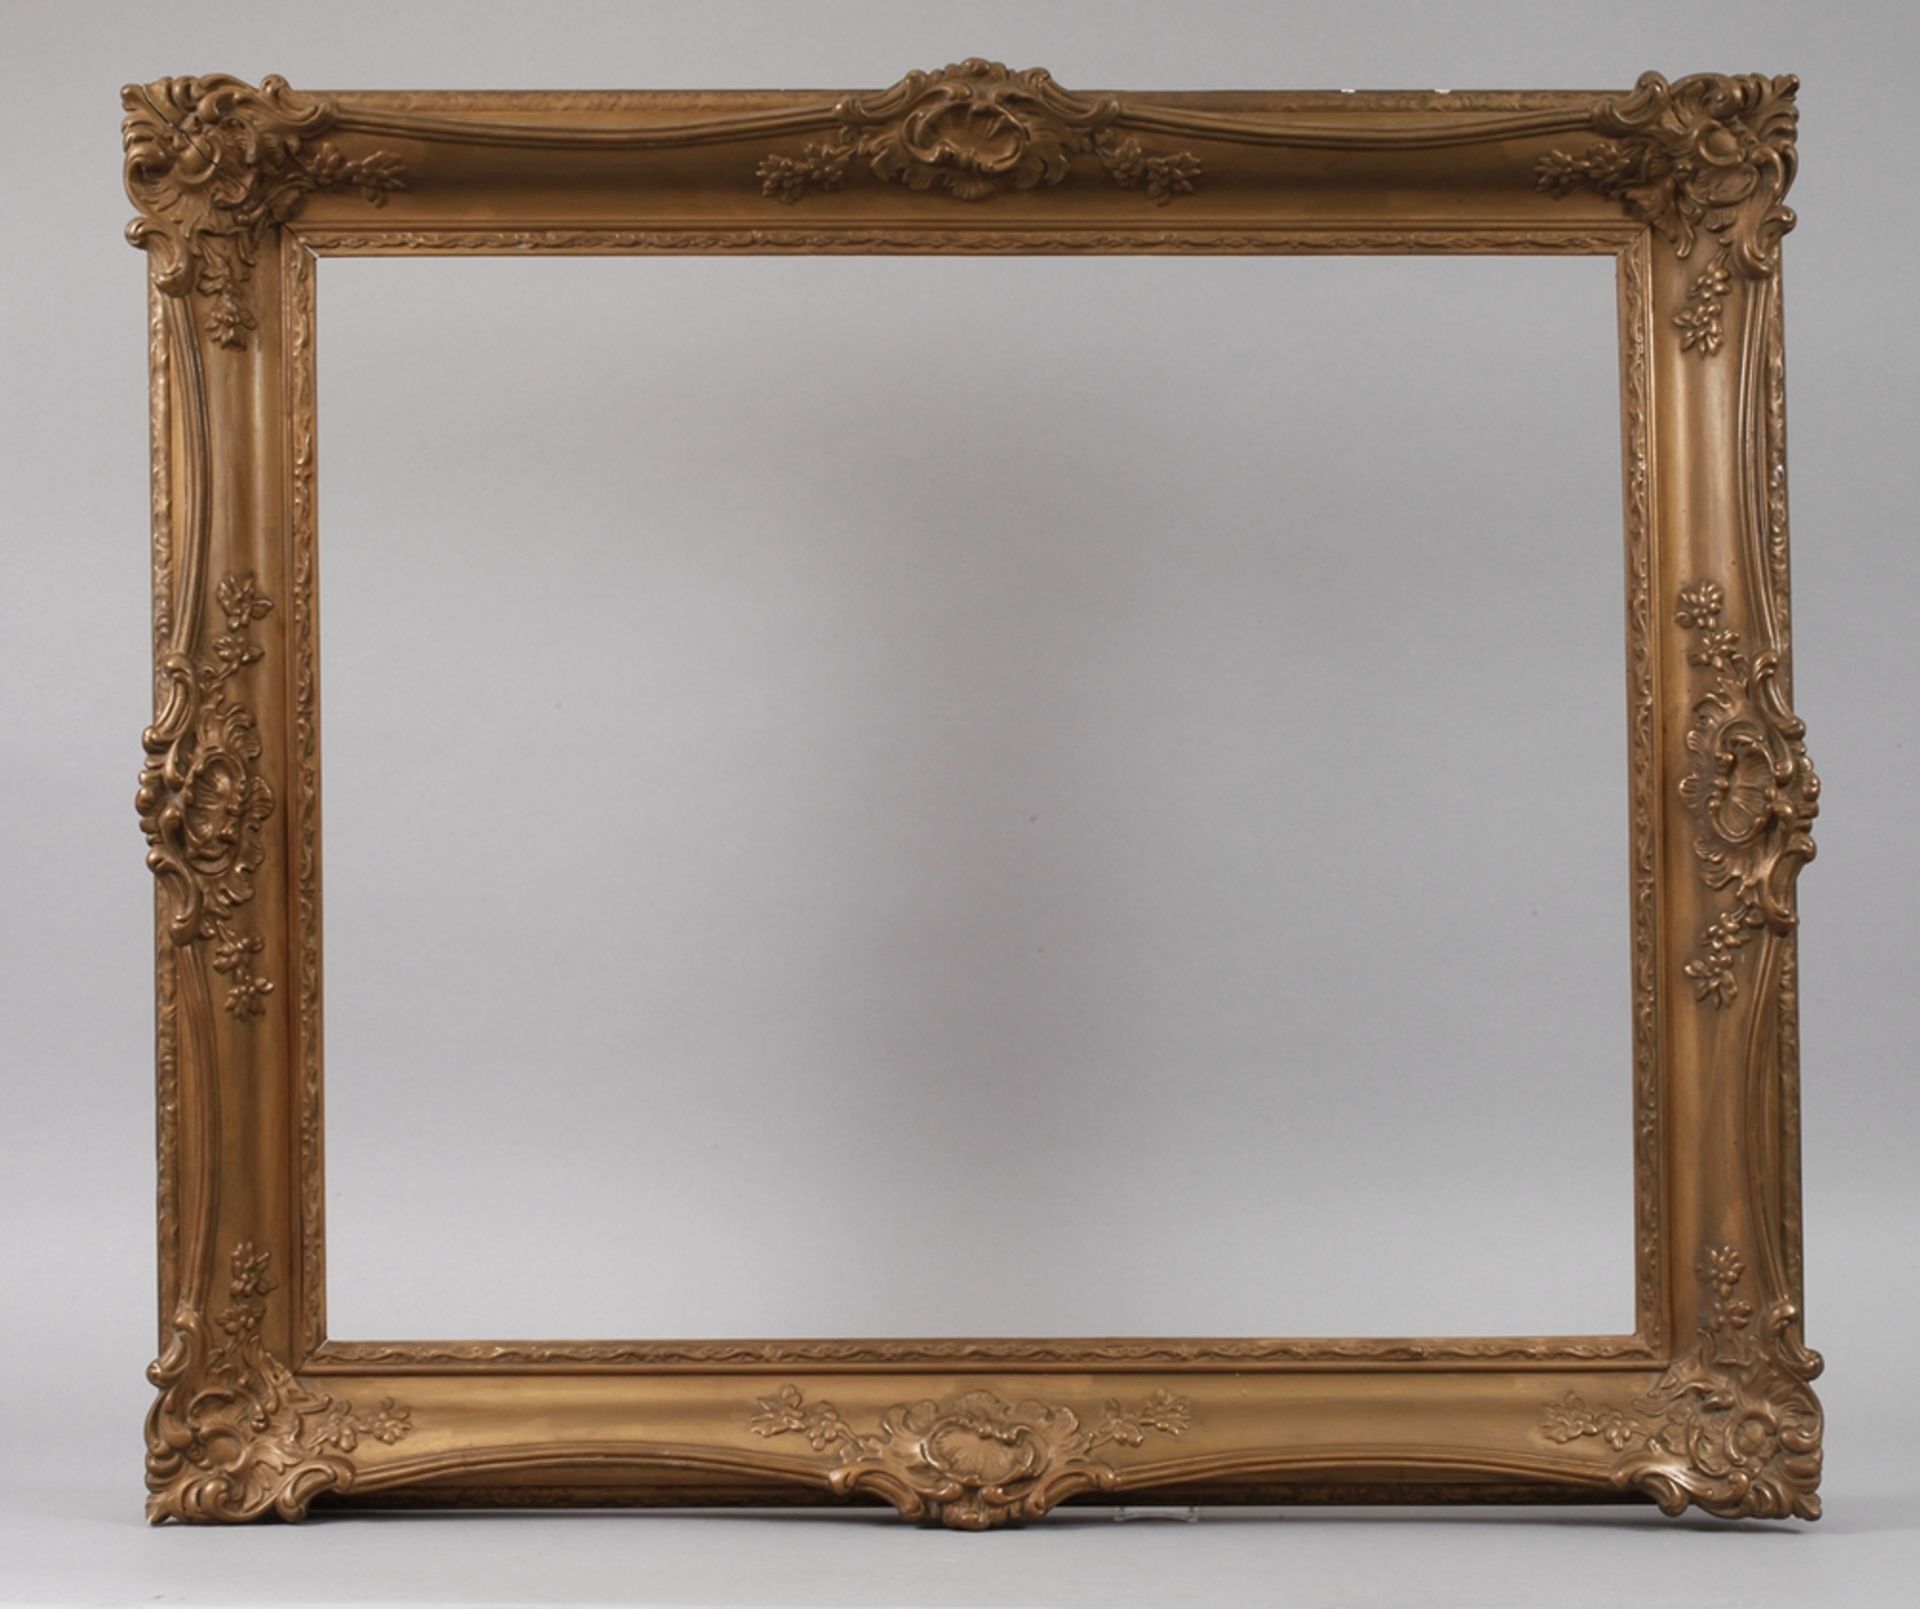 Goldstuckrahmenum 1900, Rahmen aus ca. 11 cm breiter, steigend profilierter, rückseitig gekehlter,